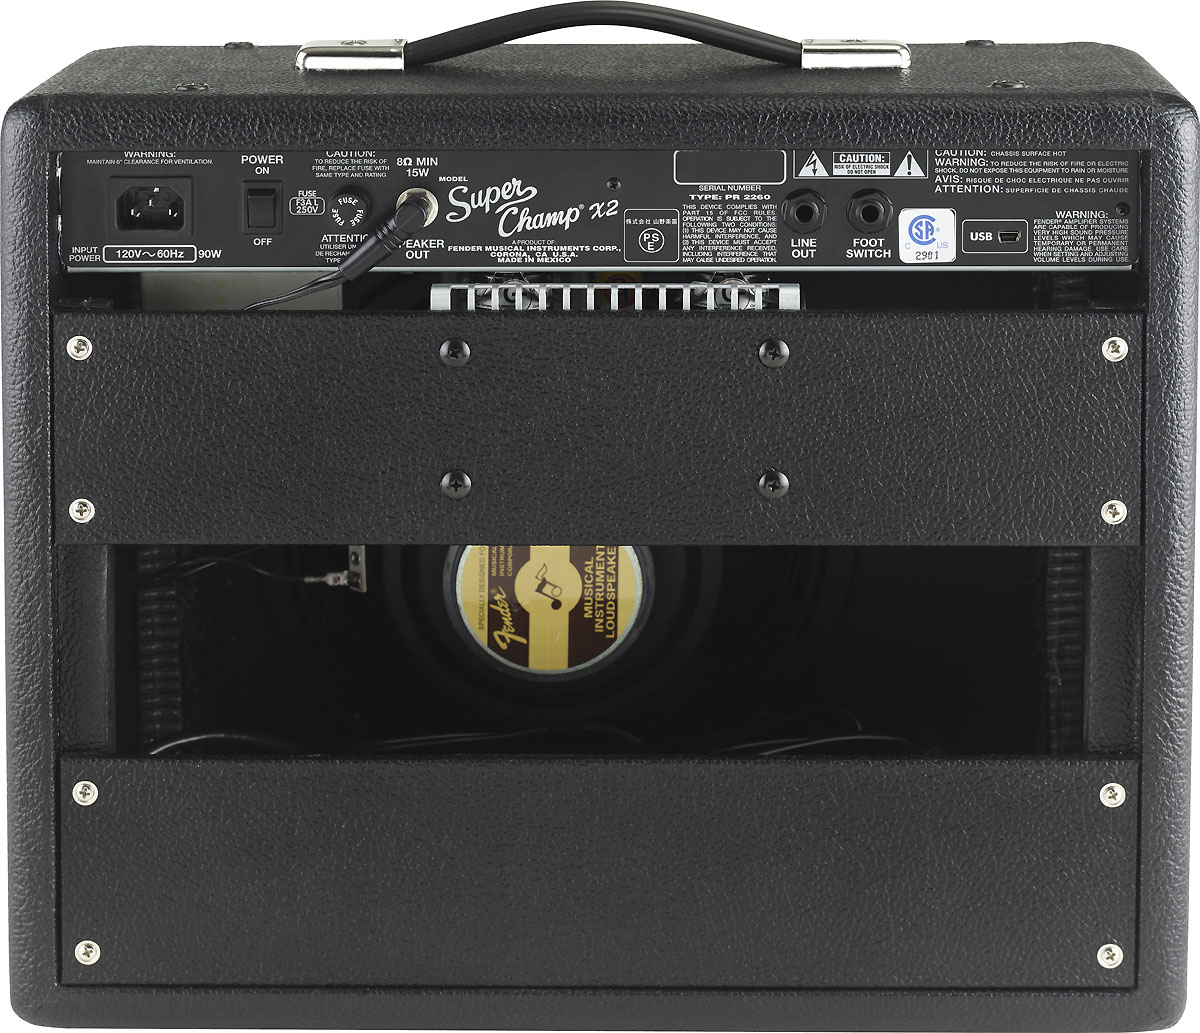 Fender Super Champ X2 2012 15w 1x10 Black - Combo amplificador para guitarra eléctrica - Variation 2